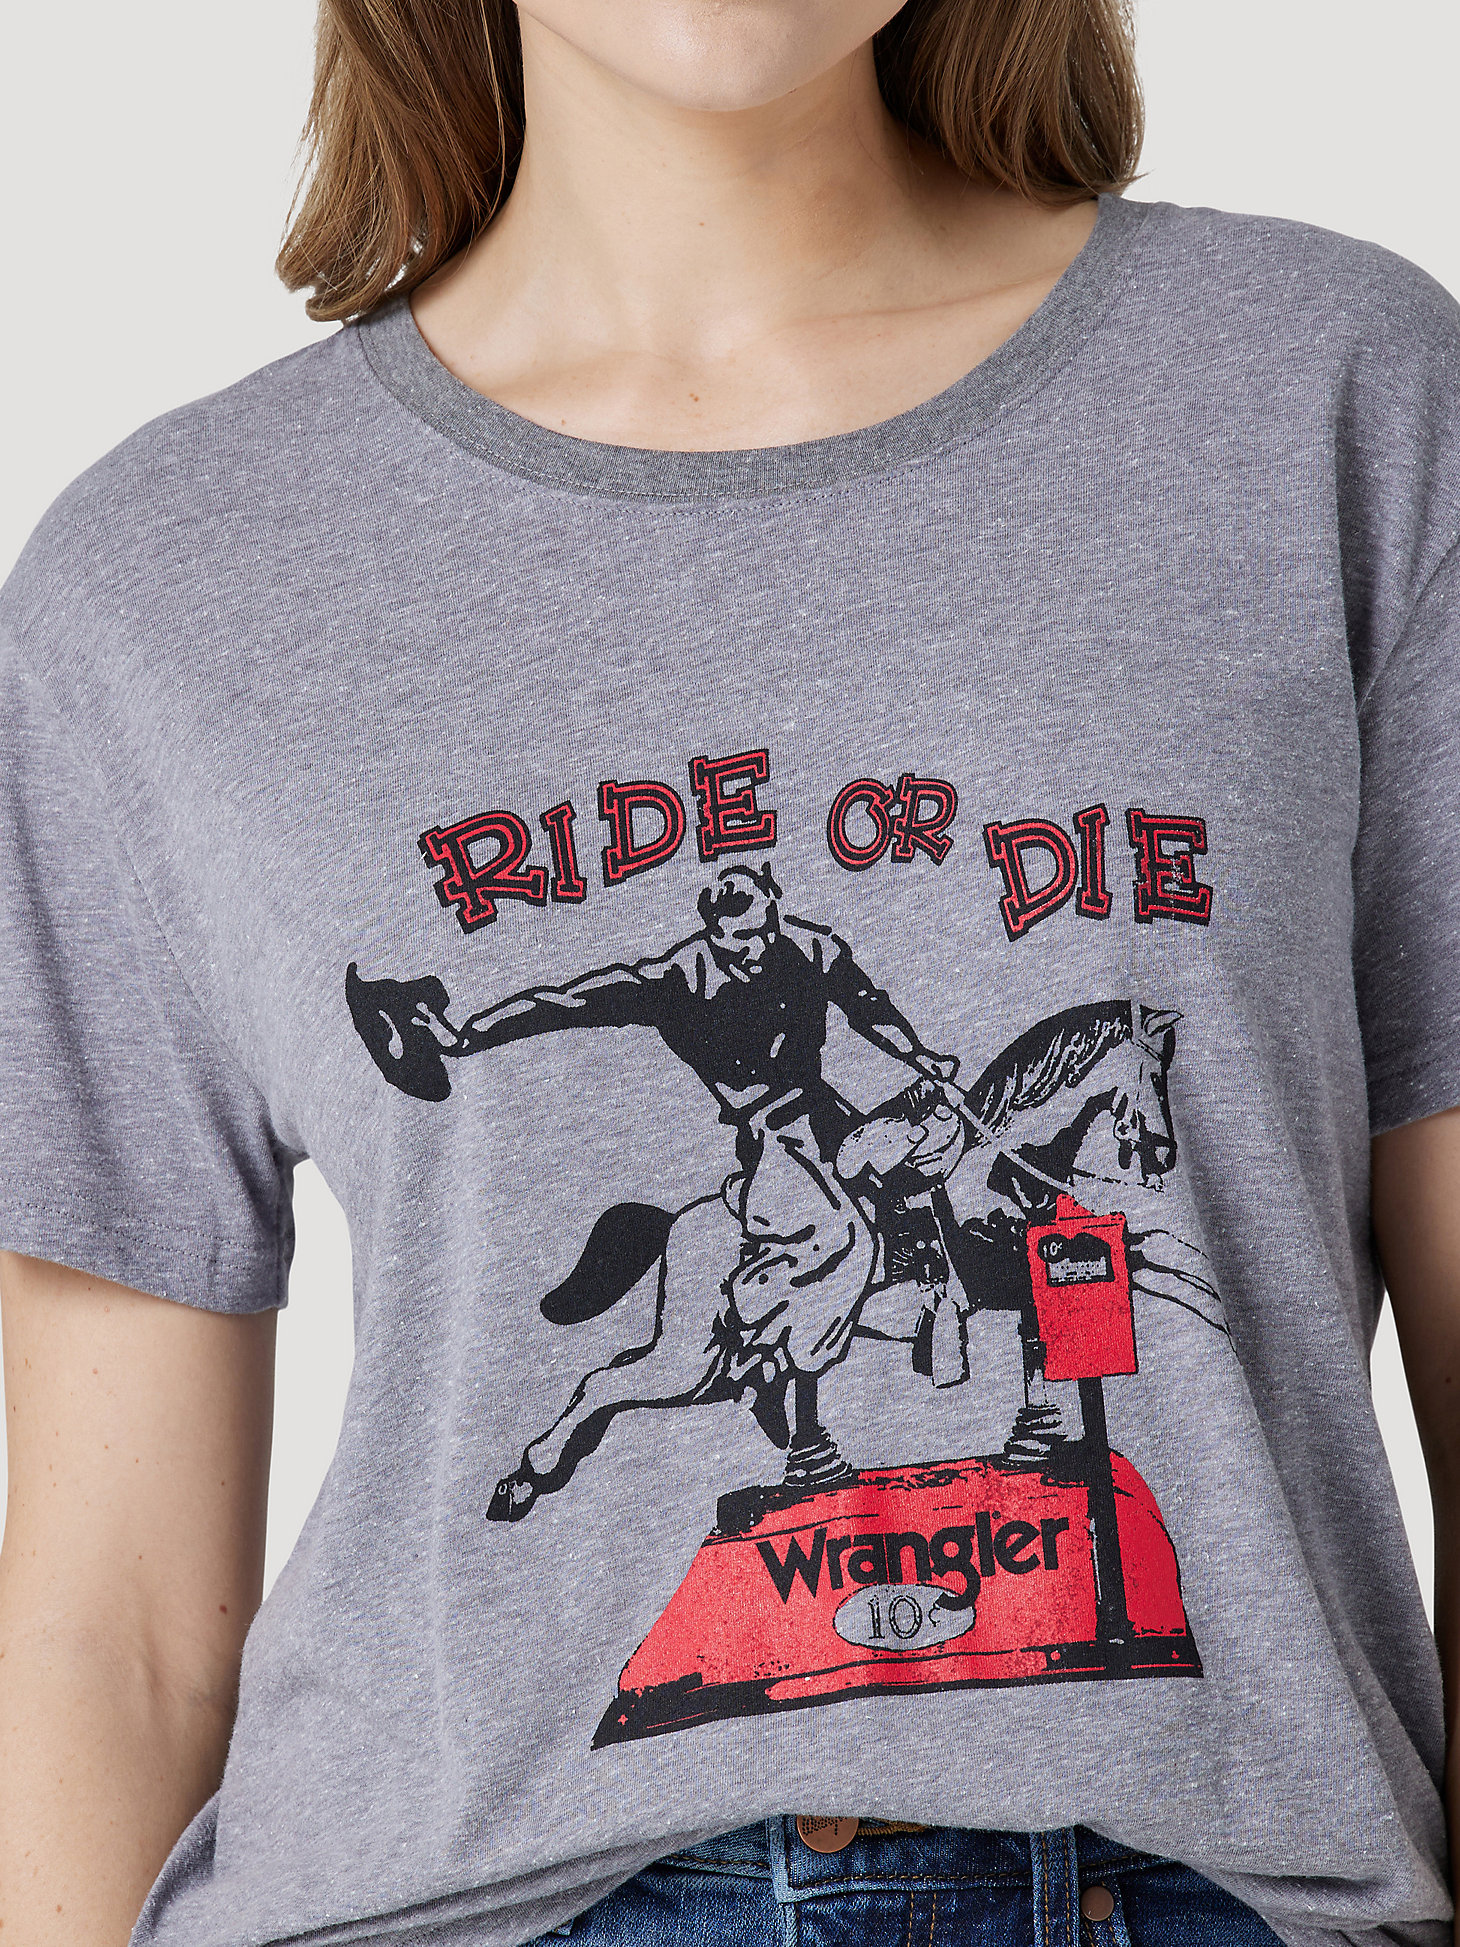 Women's Wrangler Ride Or Die Boyfriend Graphic Tee in Graphite alternative view 2